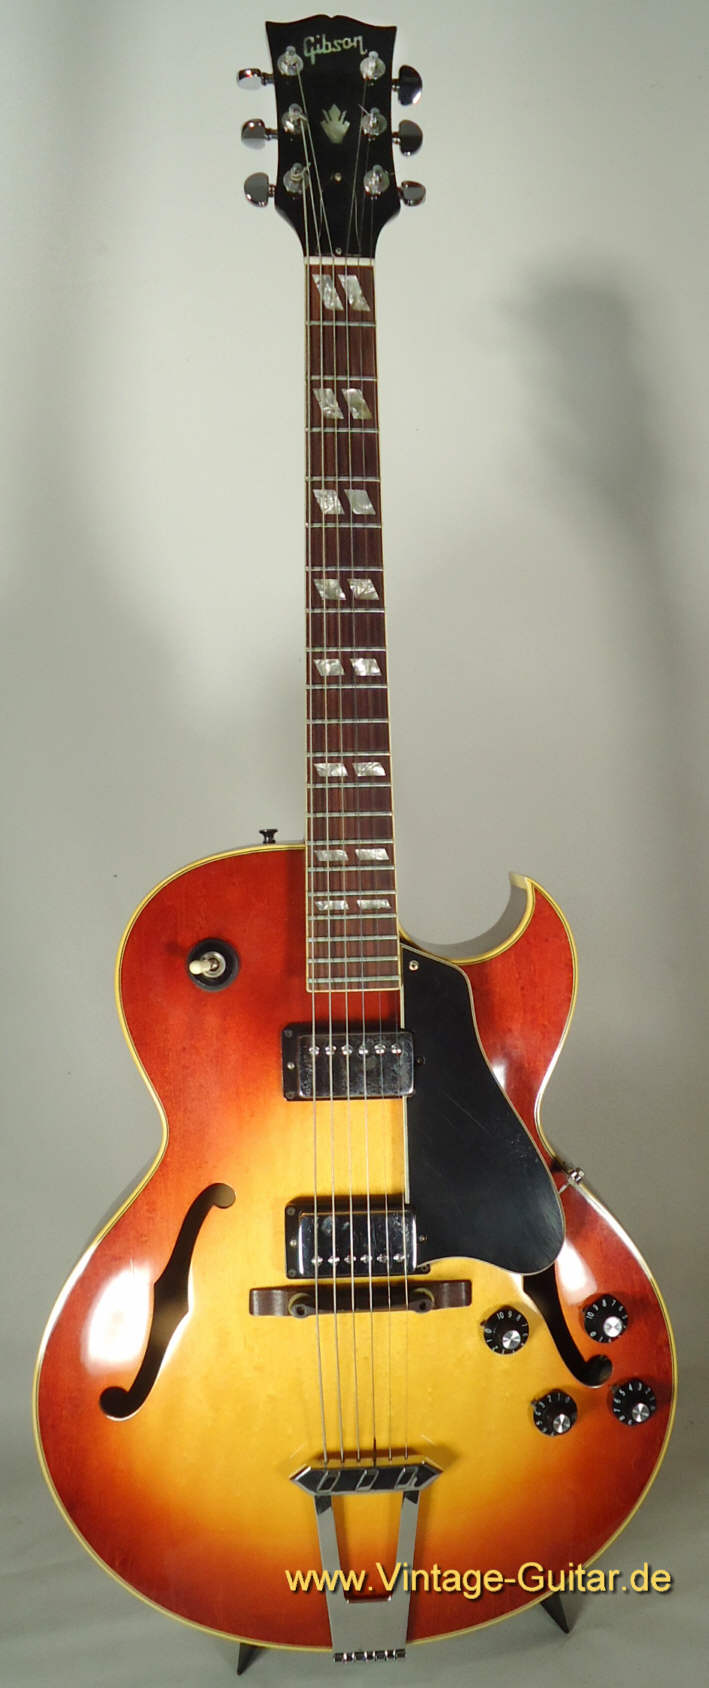 Gibson ES-175 sunburst 1974 a.jpg